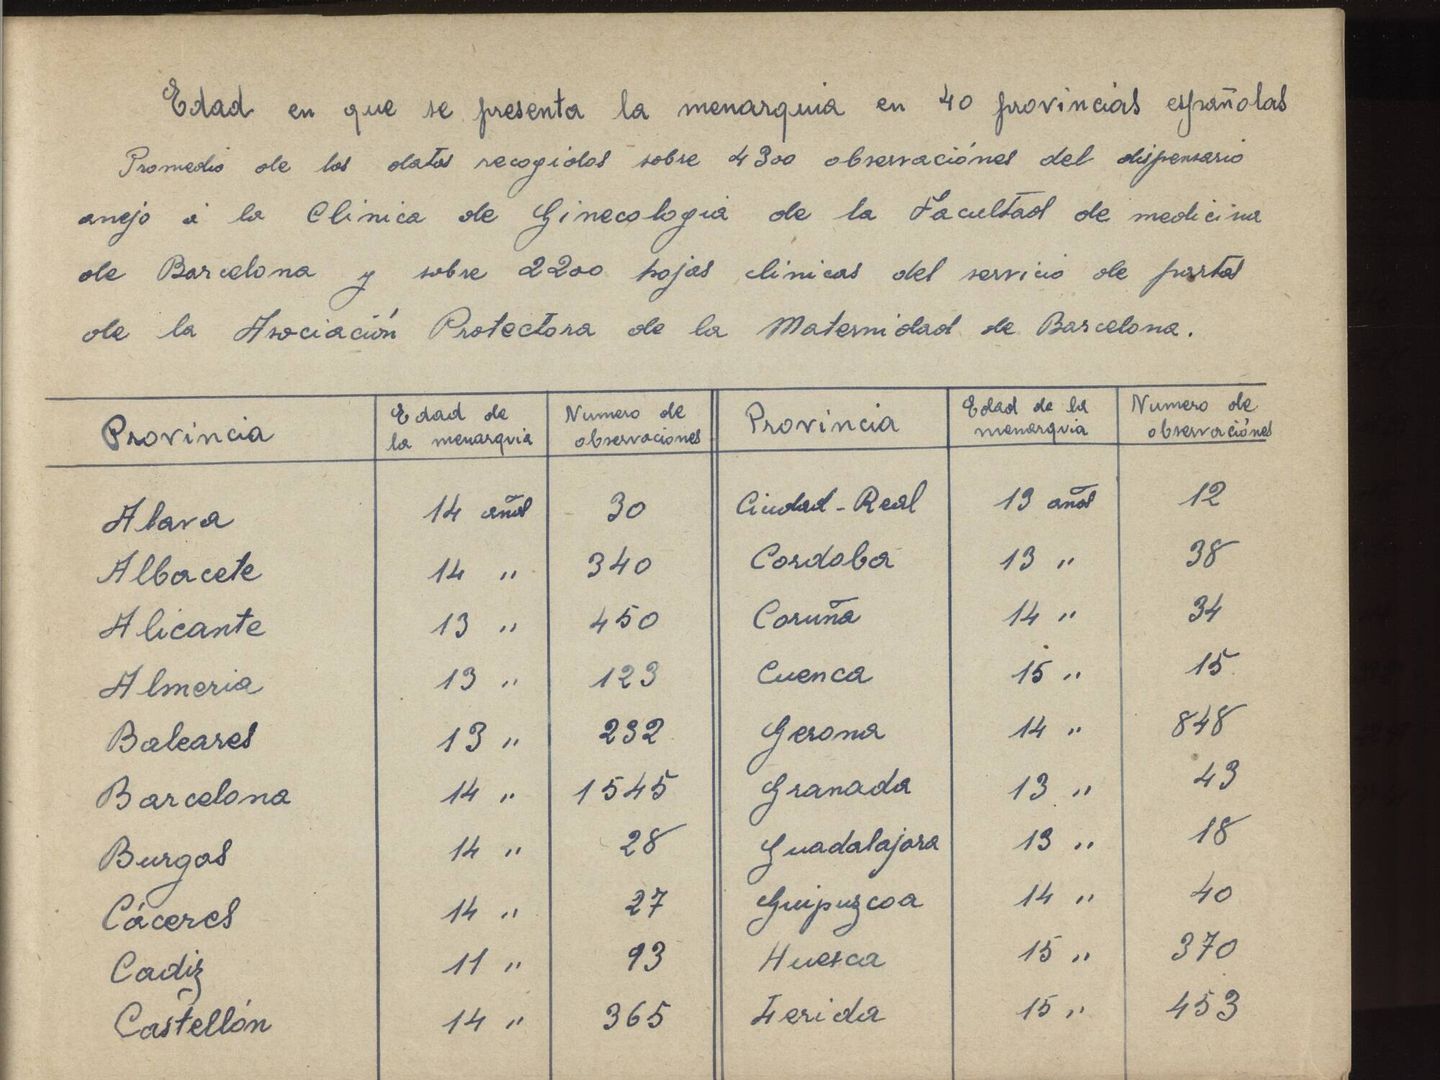 Página escaneada de la tesis manuscrita de Comas Camps sobre la menstruación en 1918. (Archivo Universidad Complutense)